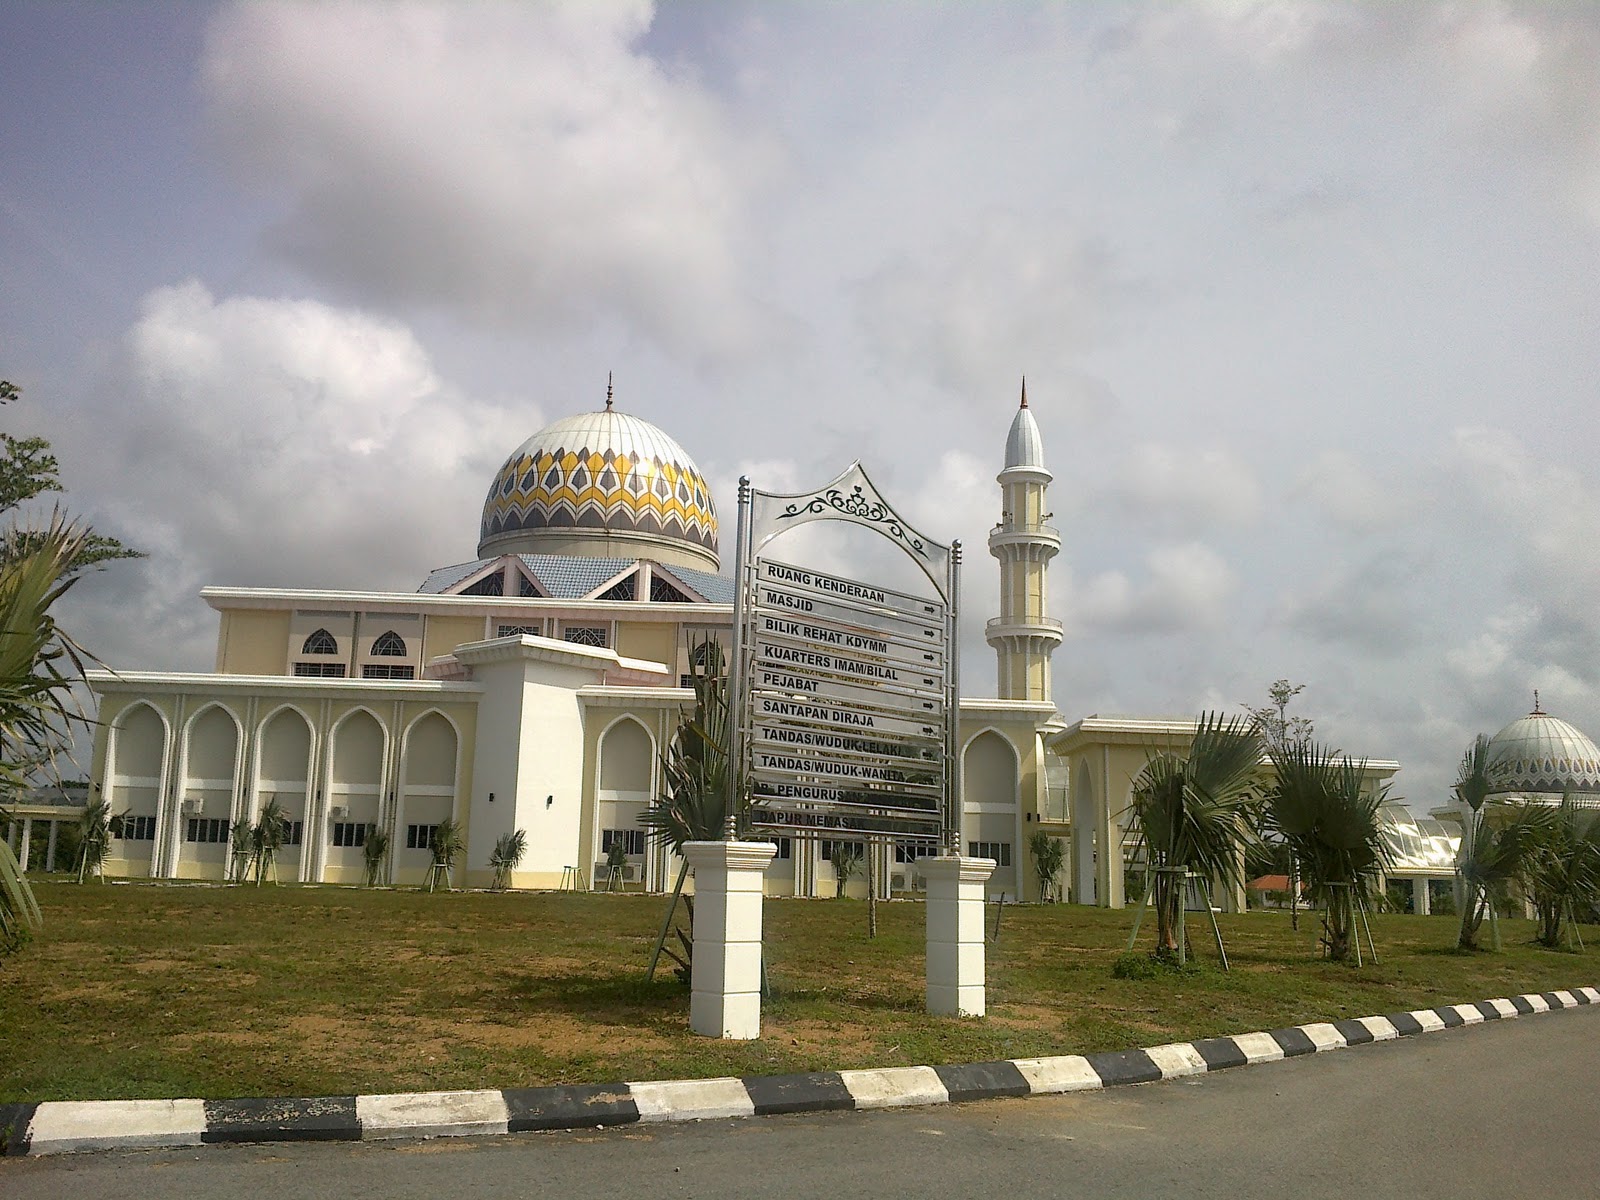 NIDA'UL ISLAM: Solat jamak di Masjid Baru Pekan, Pahang